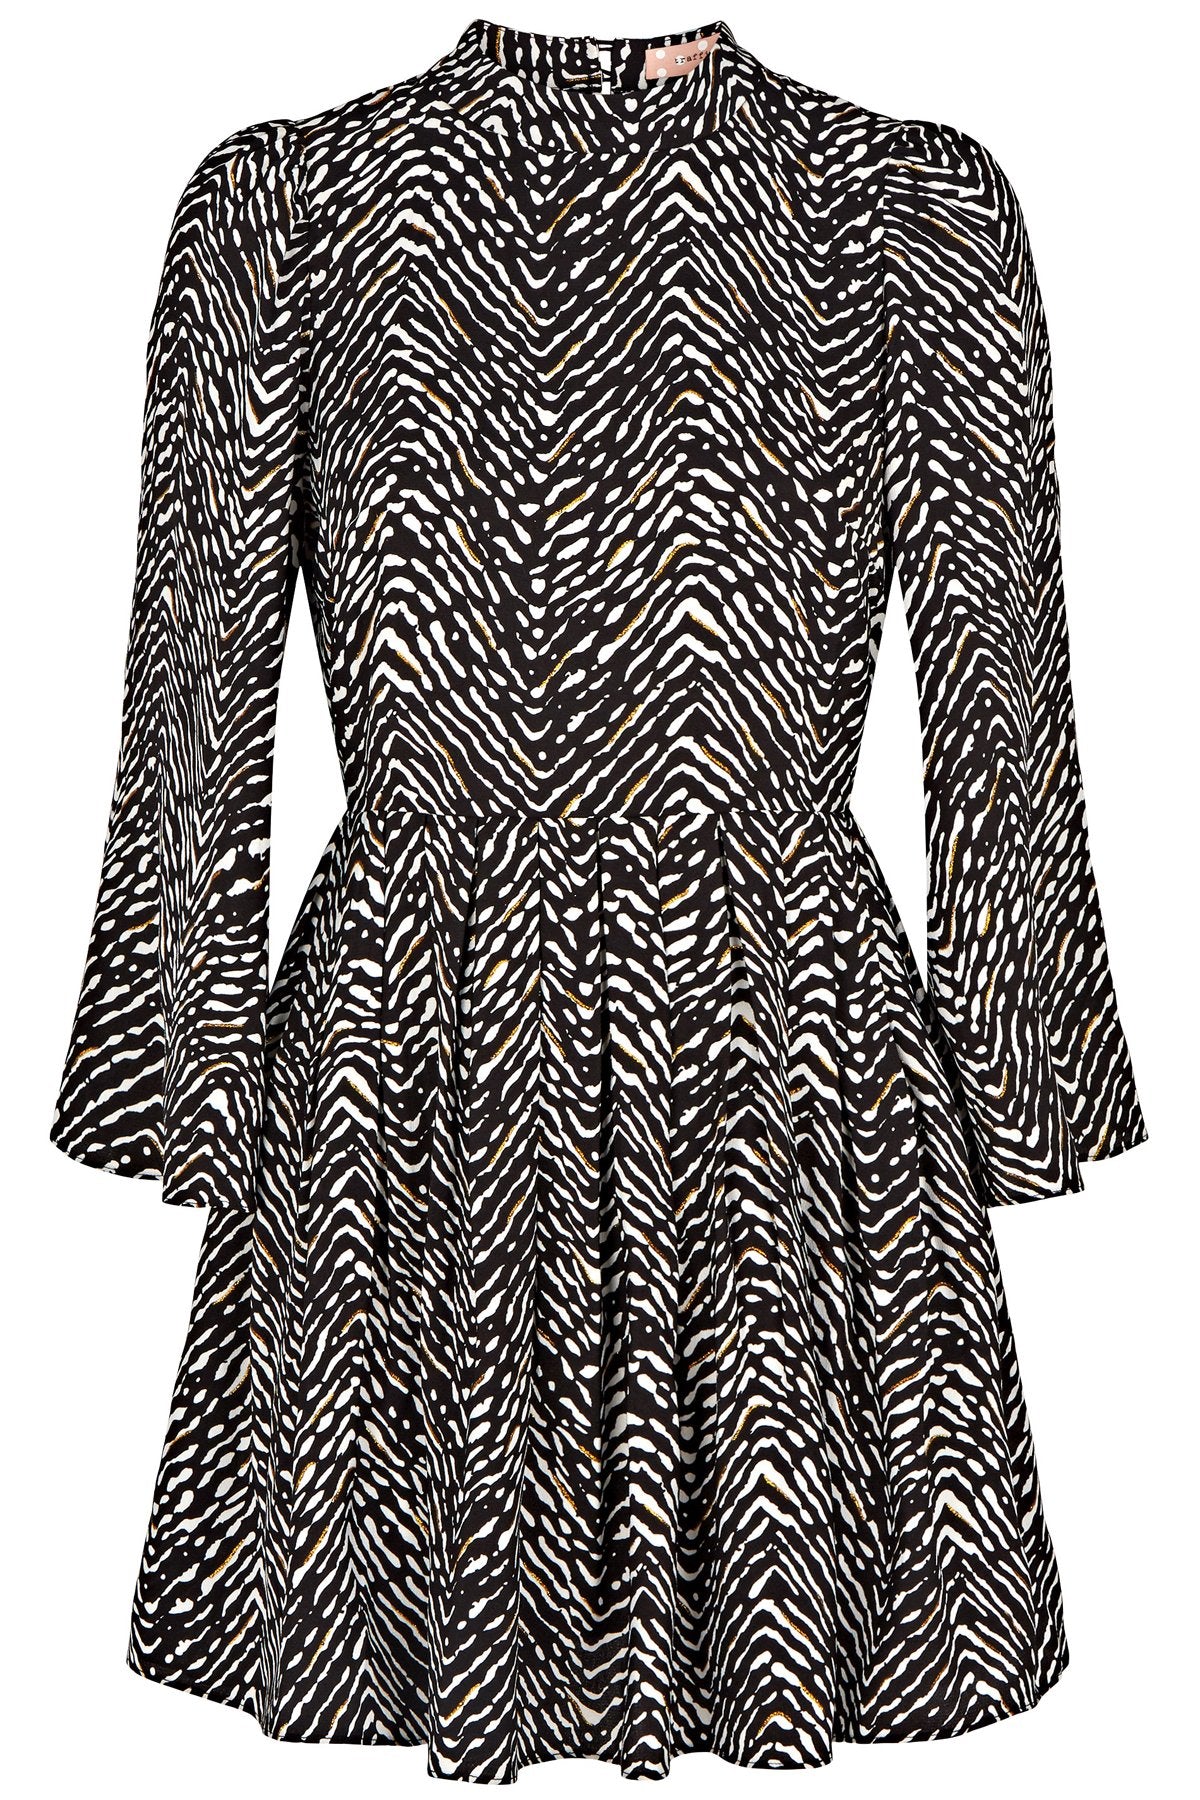 Sable Mini Dress in Black Zebra Print